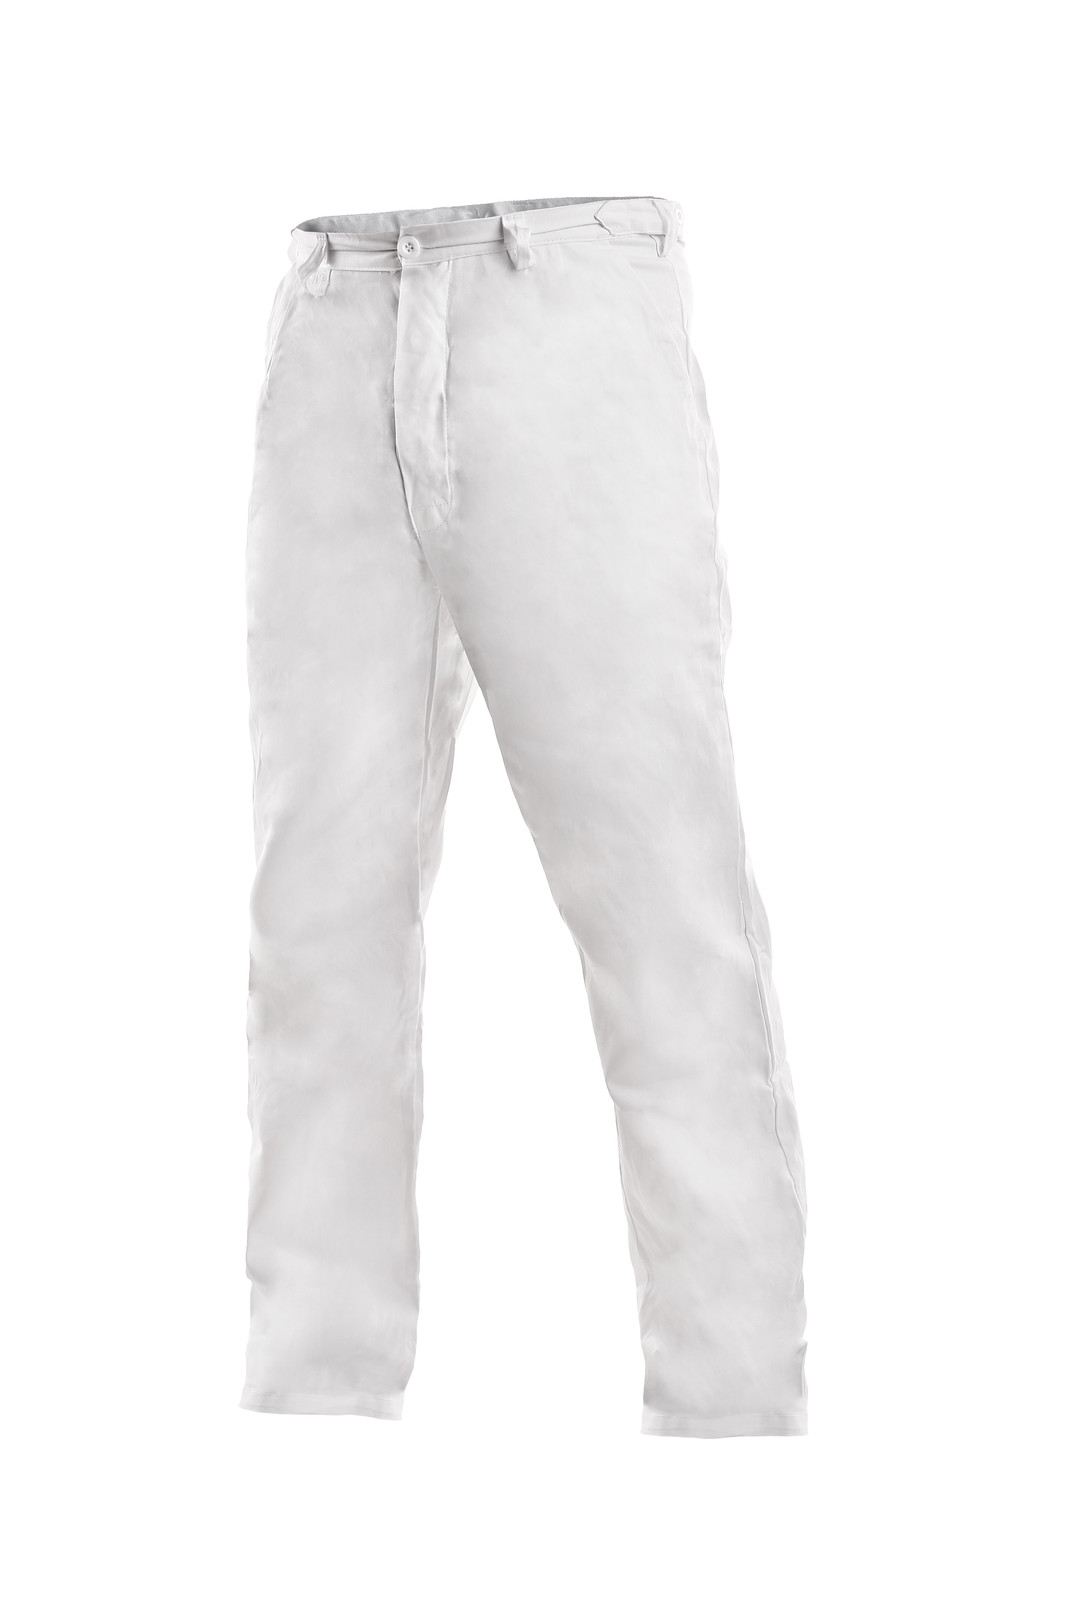 Pánske biele bavlnené nohavice Artur - veľkosť: 58, farba: biela